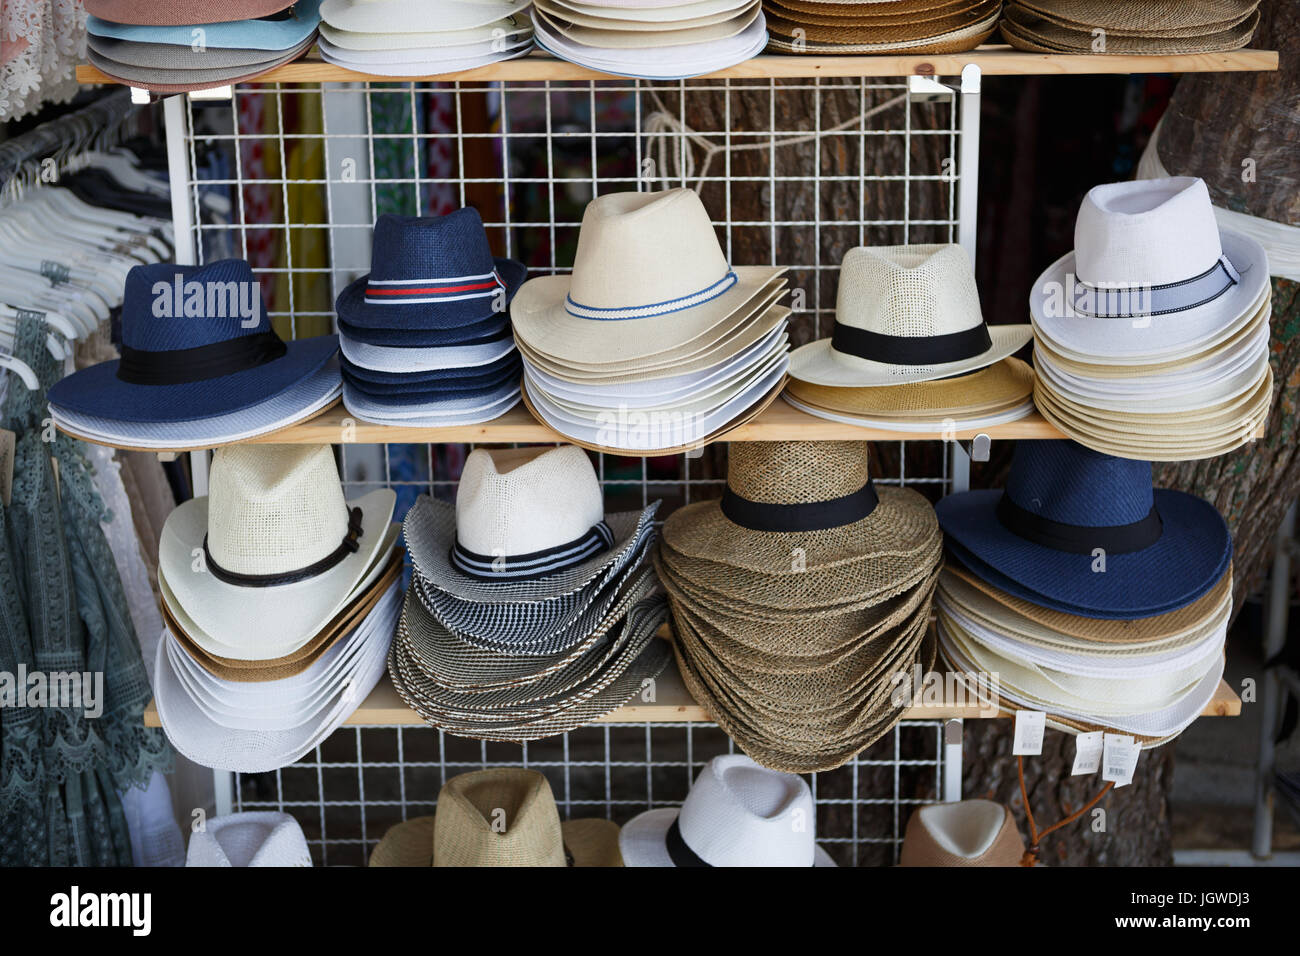 https://c8.alamy.com/compes/jgwdj3/makarska-riviera-croacia-el-20-de-junio-2017-calle-shop-vender-sombreros-de-sol-para-hombres-comprar-sol-moderno-sombrero-para-protegerse-del-sol-en-la-playa-de-stand-con-sombreros-jgwdj3.jpg